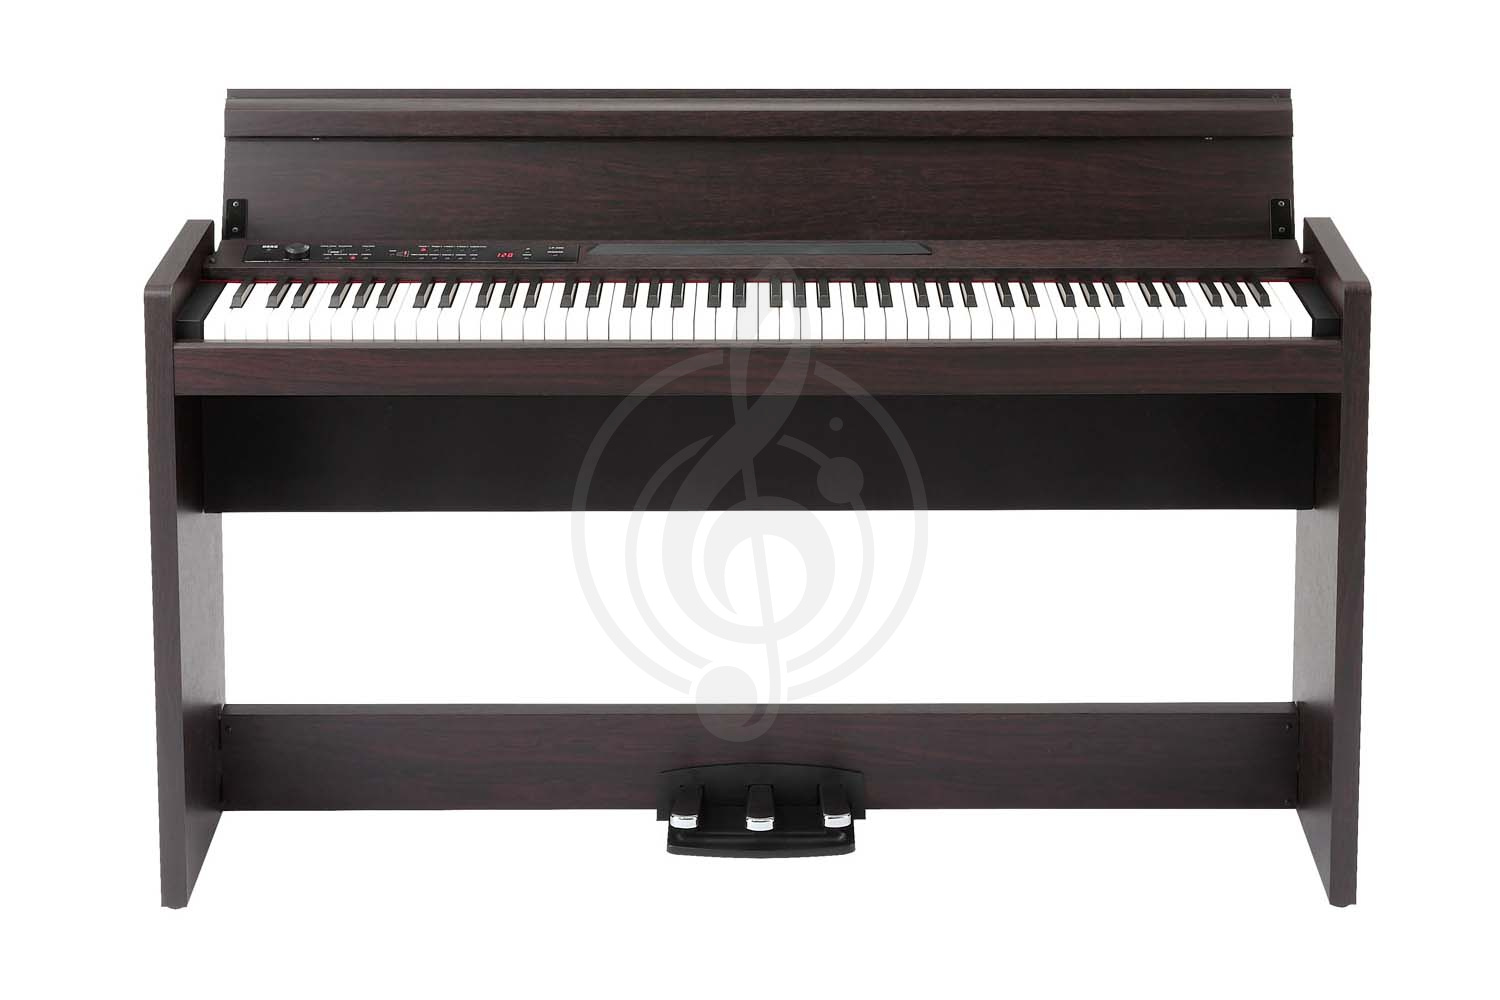 Цифровое пианино Цифровые пианино Korg KORG LP-380 RW - Цифровое пианино LP-380 RW - фото 1